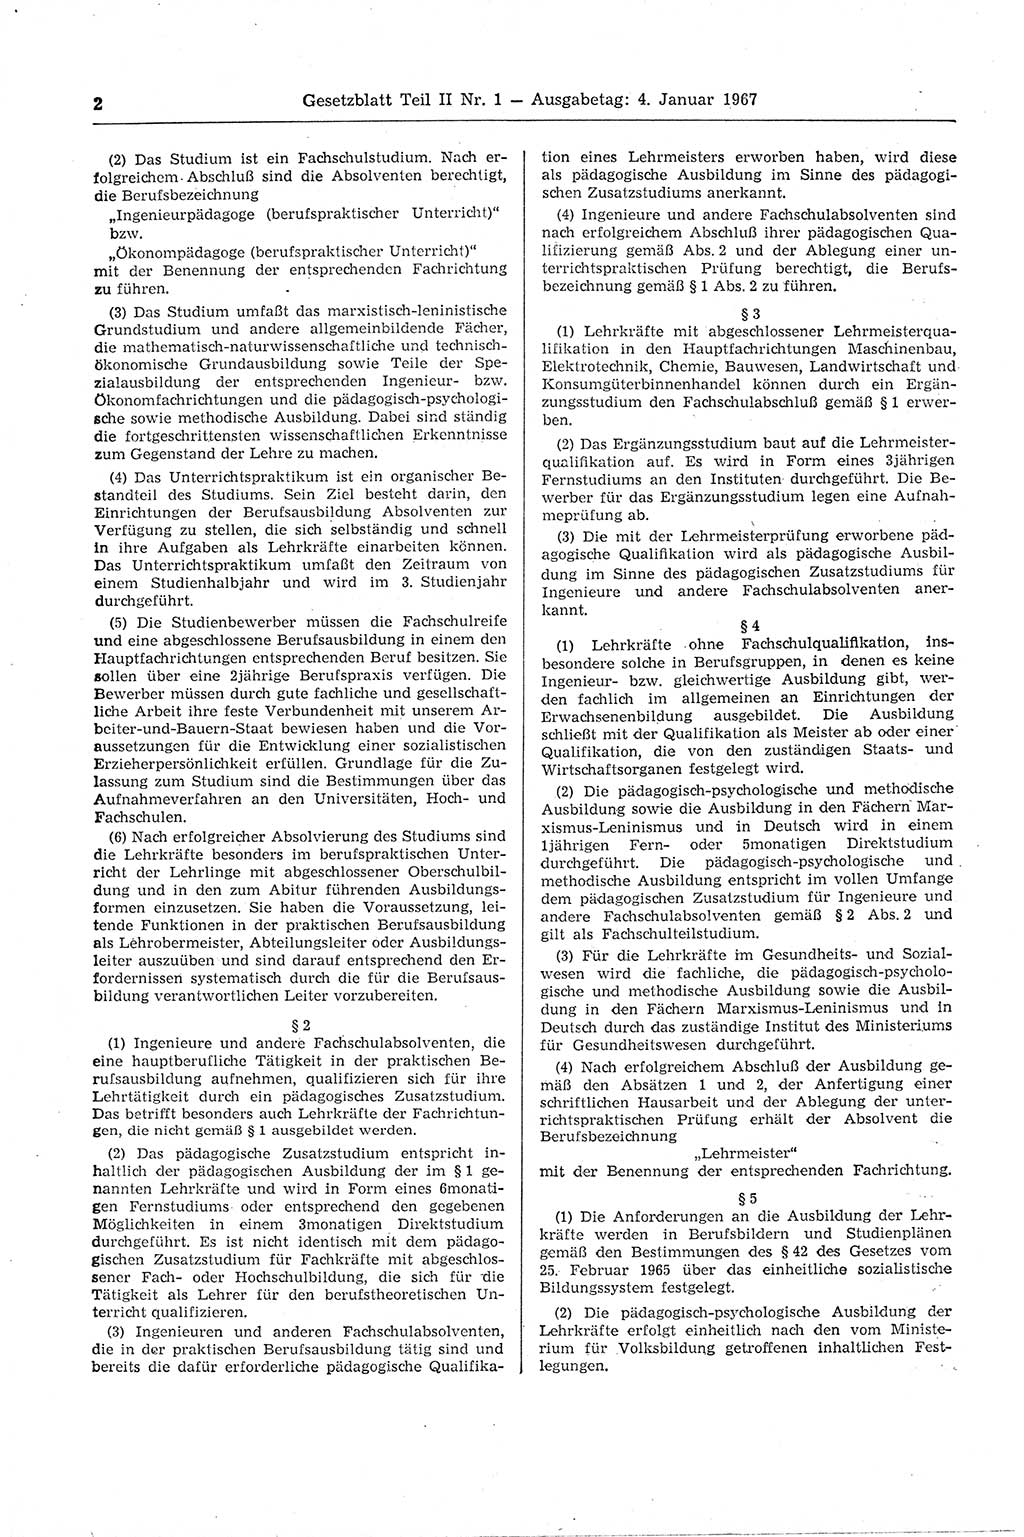 Gesetzblatt (GBl.) der Deutschen Demokratischen Republik (DDR) Teil ⅠⅠ 1967, Seite 2 (GBl. DDR ⅠⅠ 1967, S. 2)